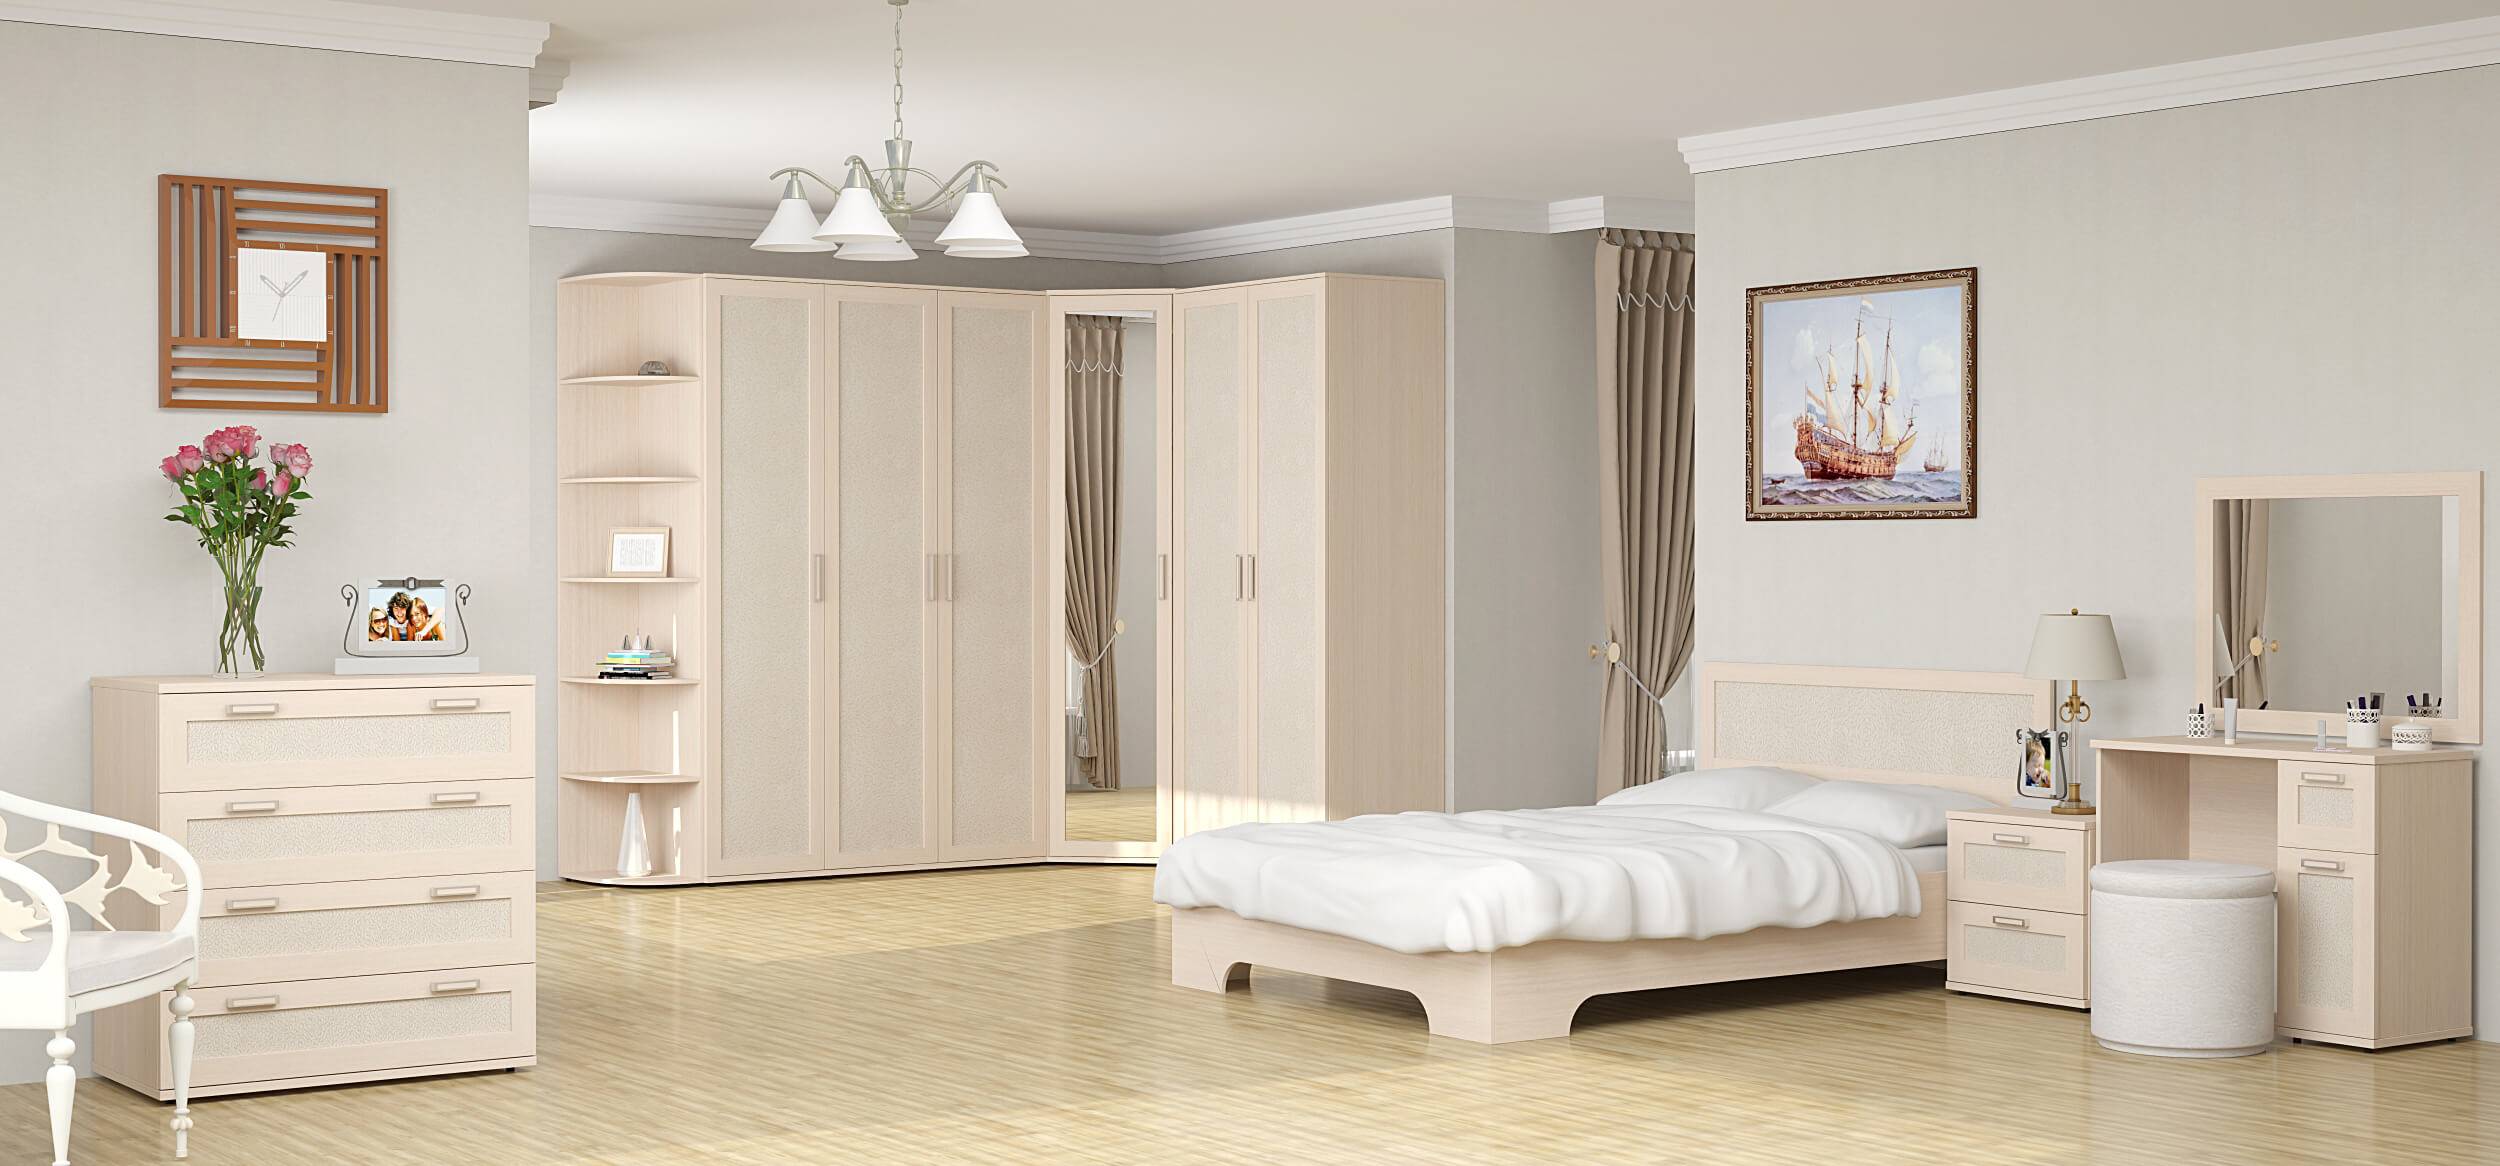 Выбираем мебель для спальни: 5 основных предметов интерьера